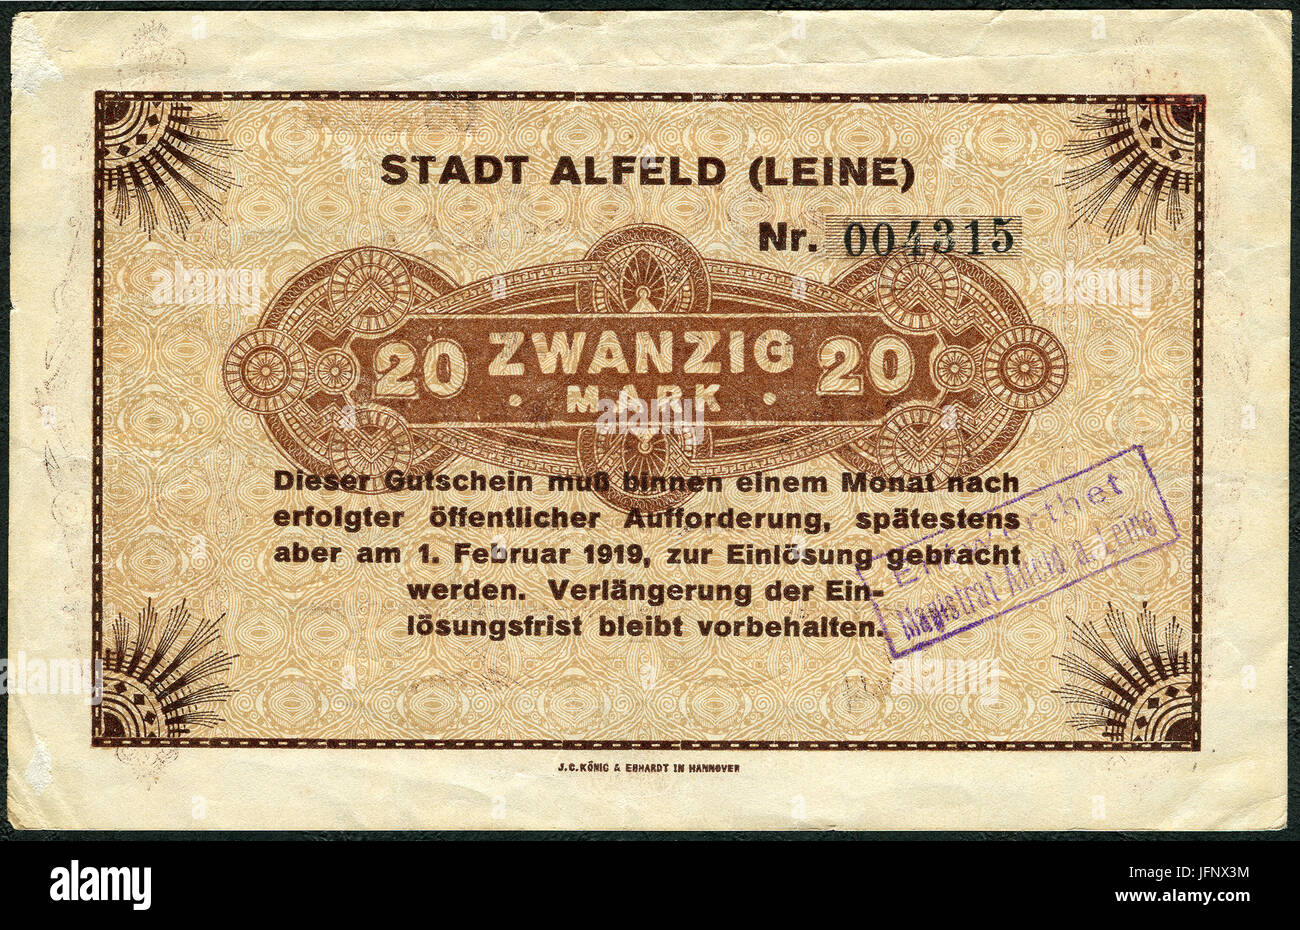 1918-12-01 Stadt Alfeld (Leine) Gutschein über 20 Mark ... am 1. Februar 1919 zur Einlösung ... J. C. König & Ebhardt in Hannover, Entwertet Stempel Stock Photo